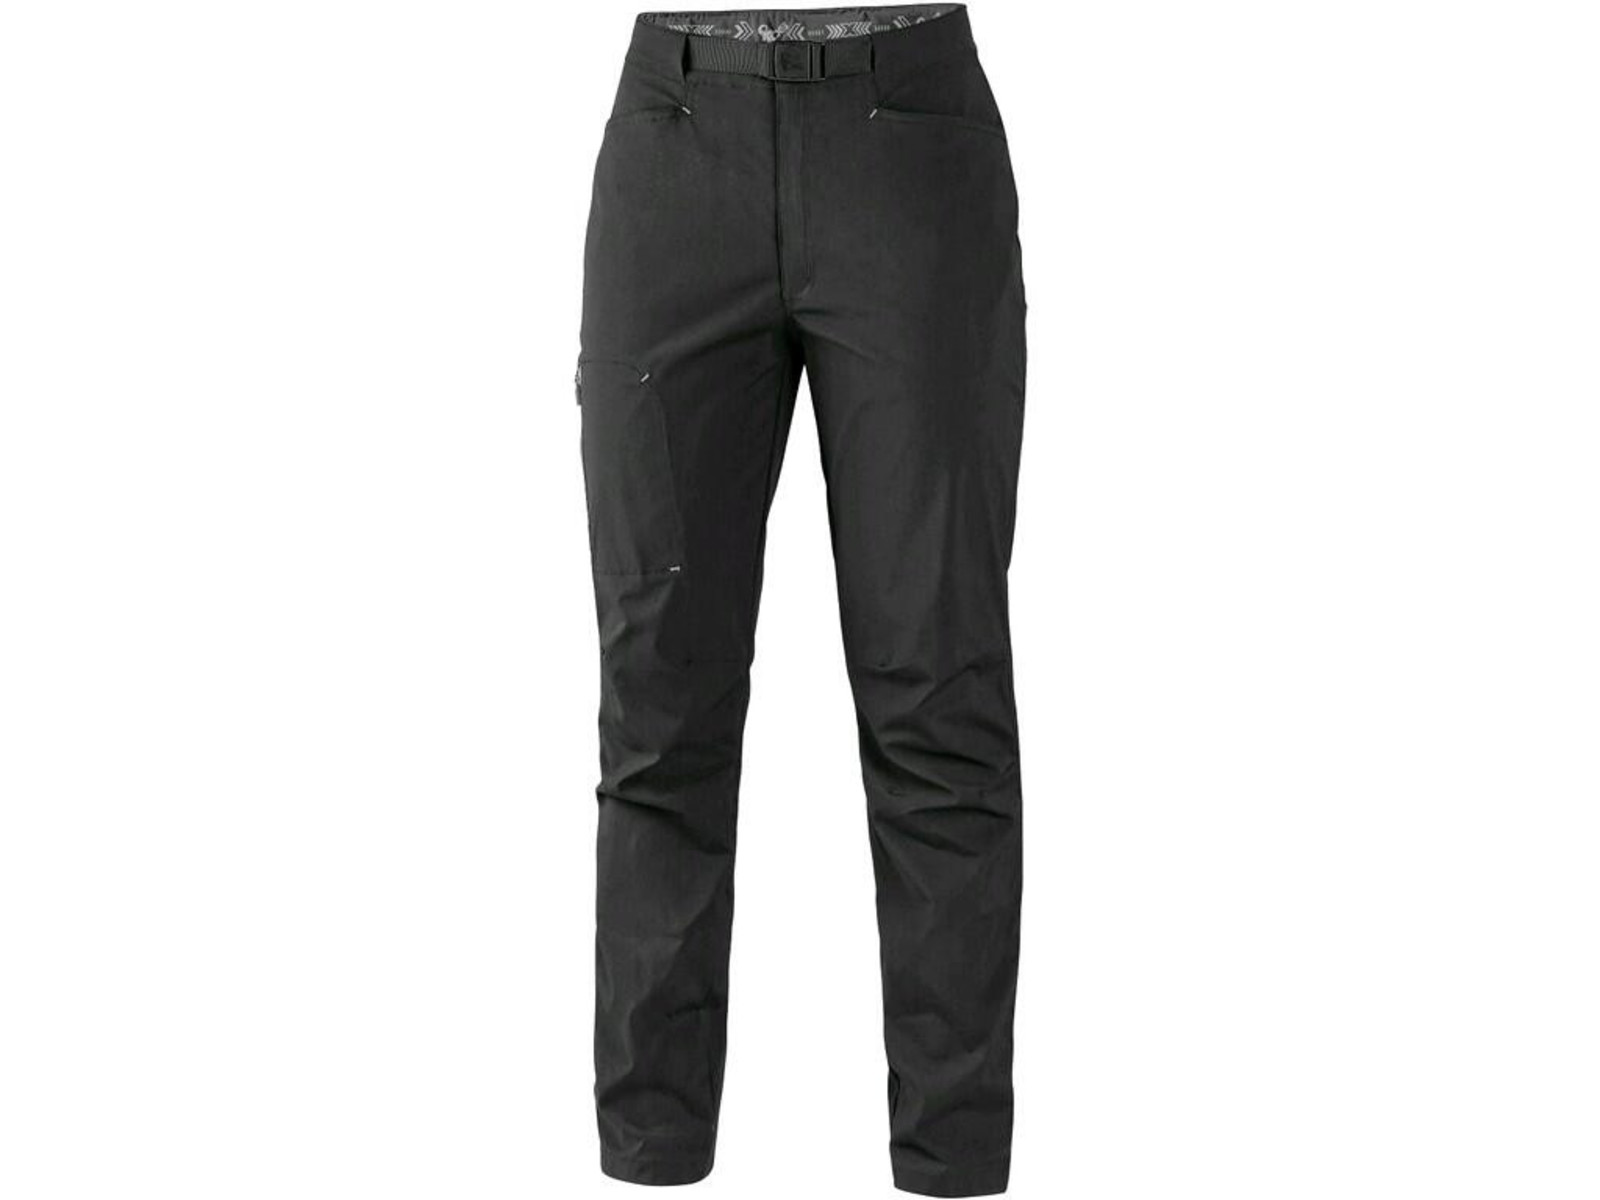 Dámske letné nohavice CXS Oregon - veľkosť: 40, farba: čierna/sivá